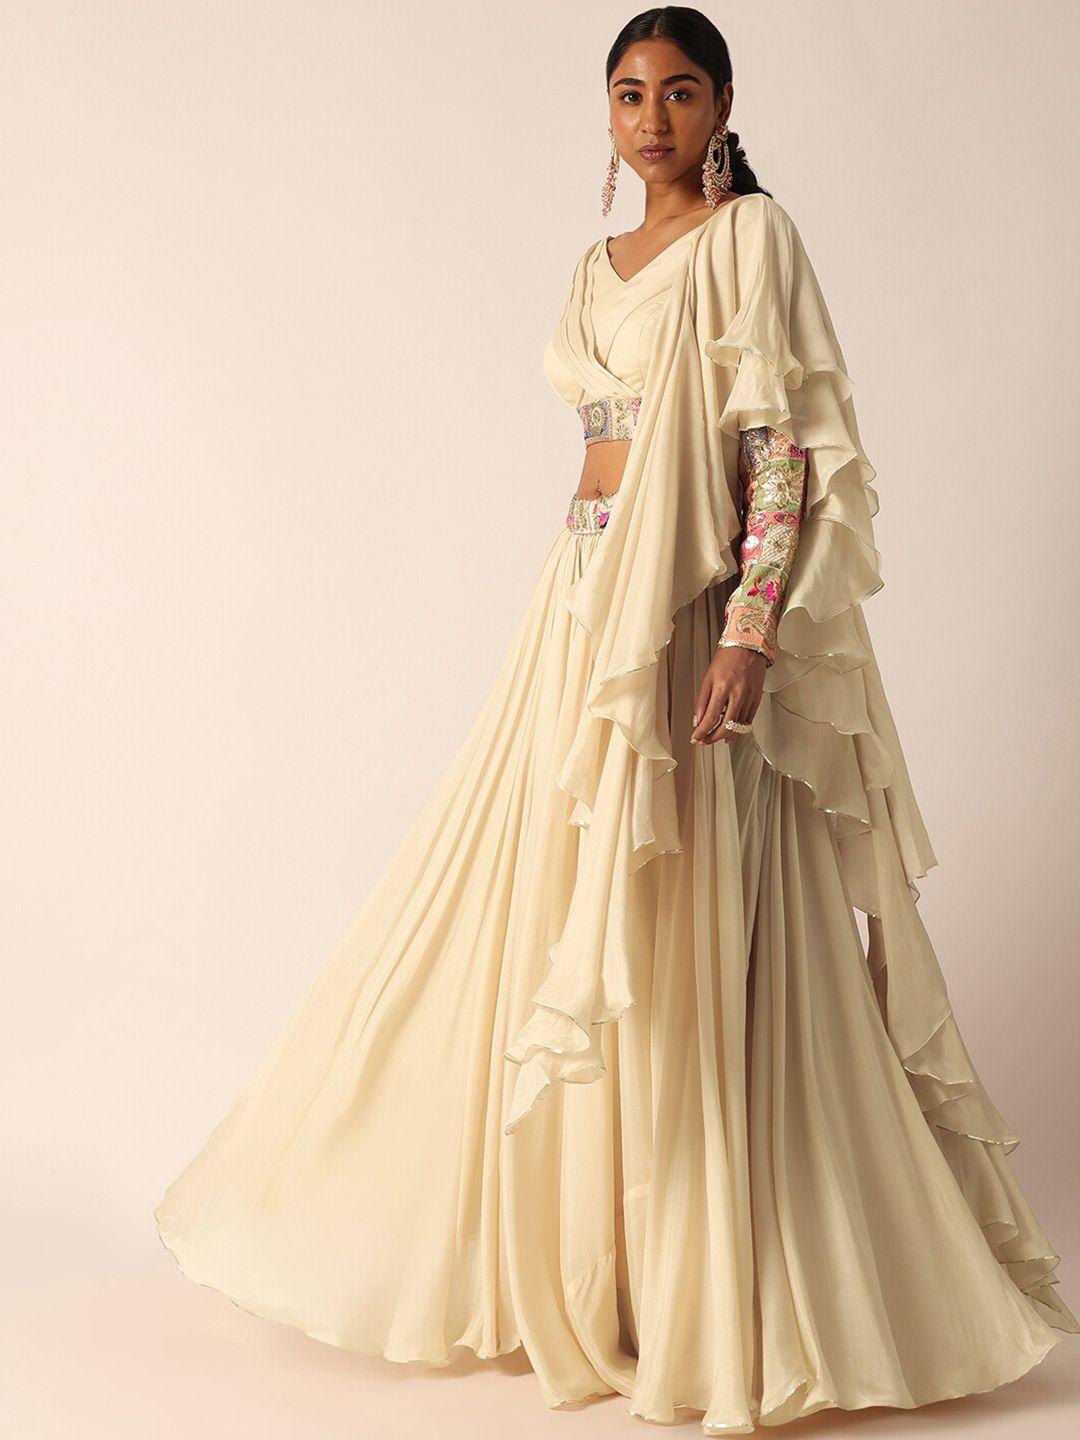 kalki fashion embellished sequinned ready to wear lehenga & blouse with dupatta